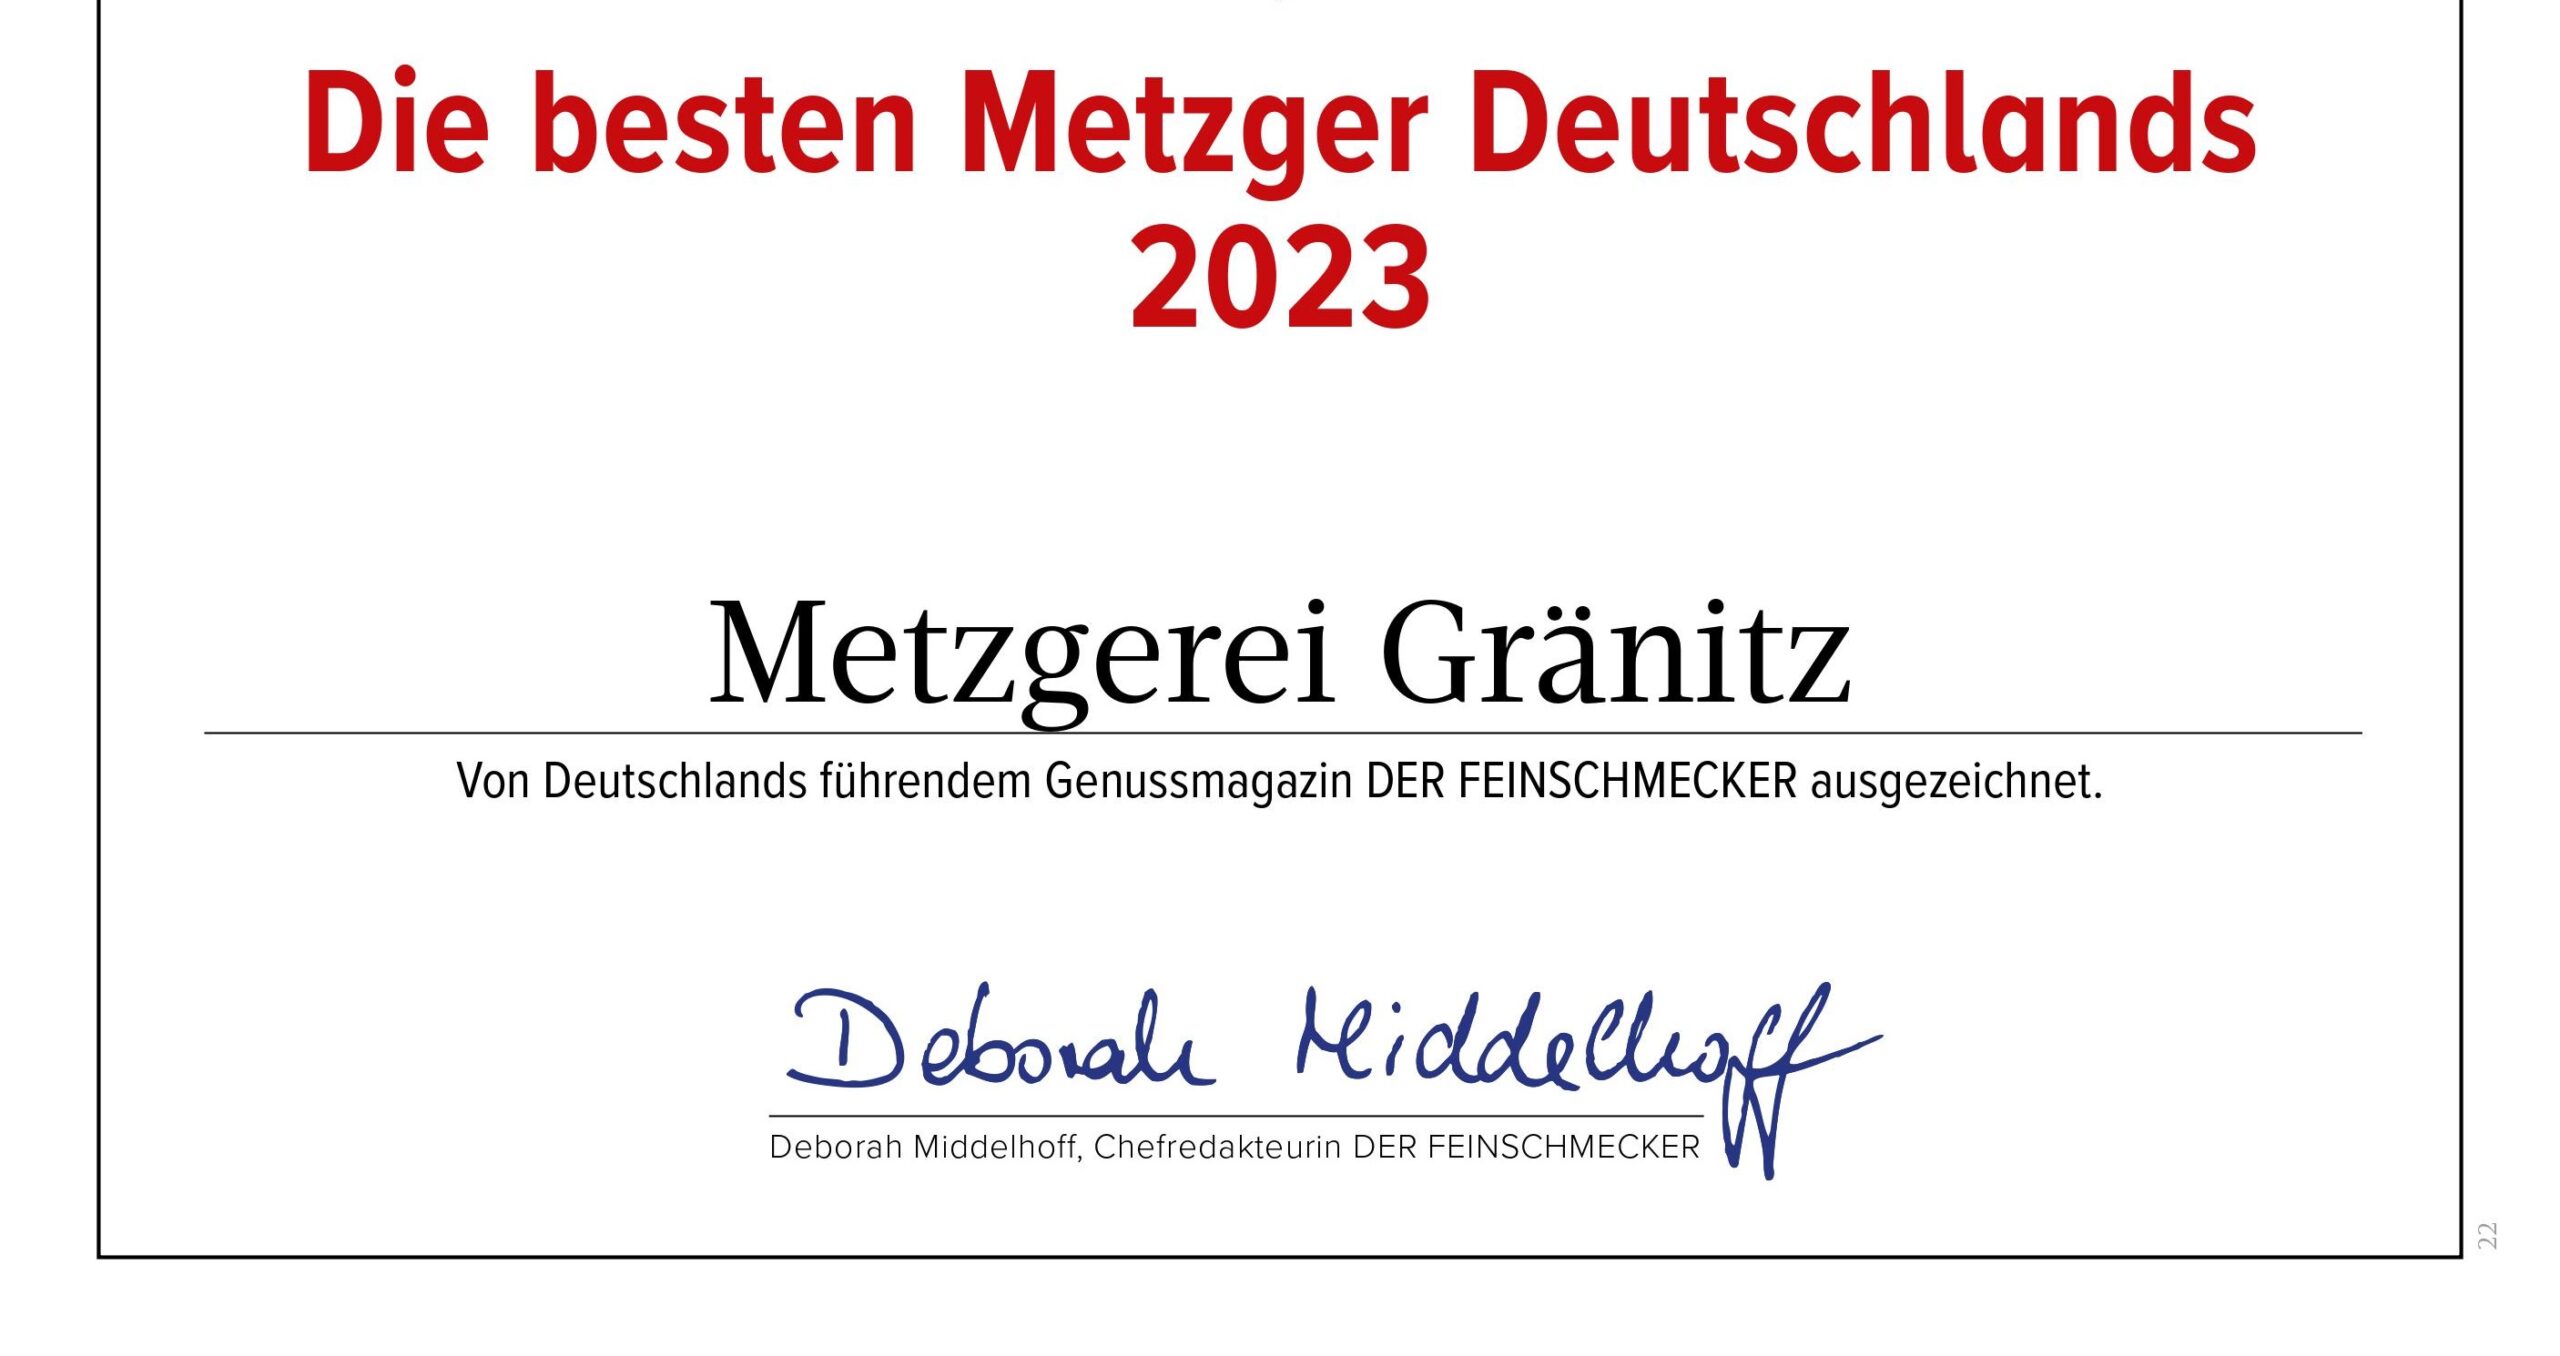 Wir gehören zu den besten Metzgern Deutschlands 2023